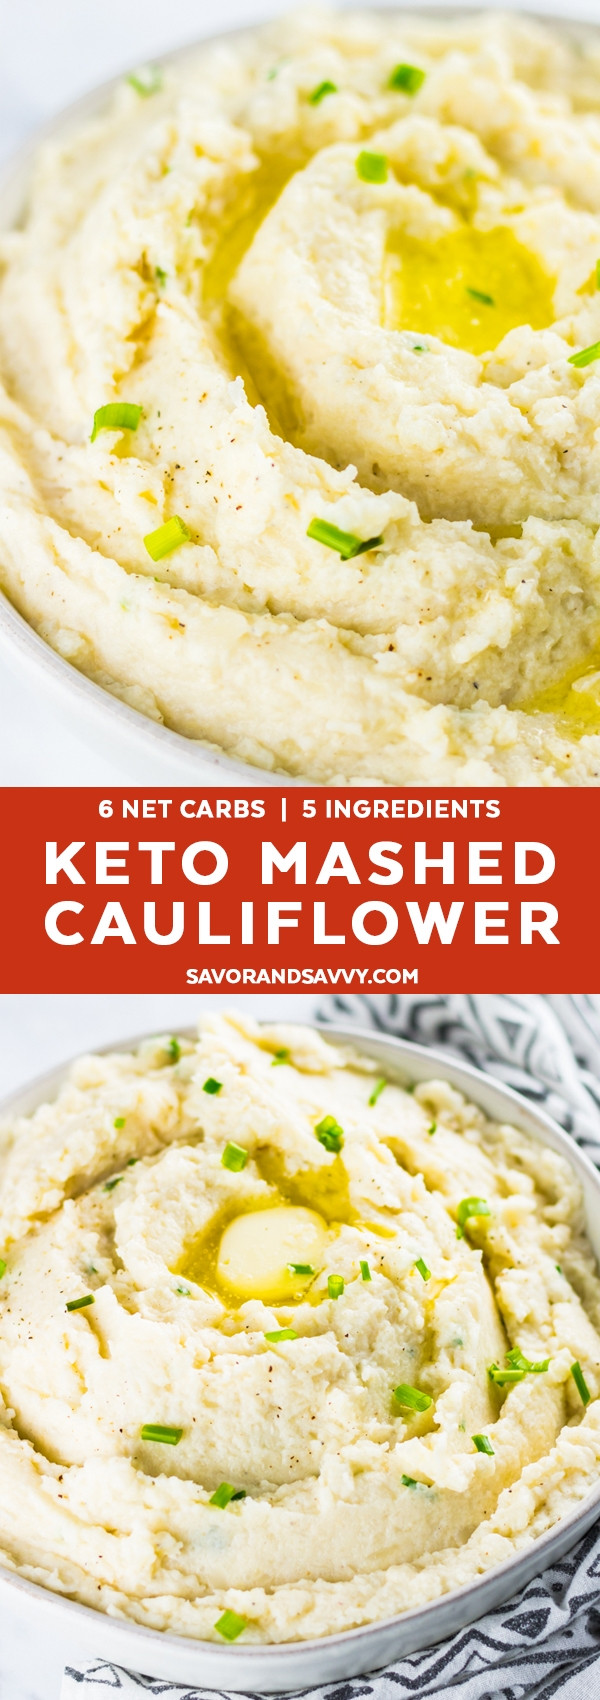 Creamy Mashed Cauliflower Keto
 Keto Mashed Cauliflower Recipe